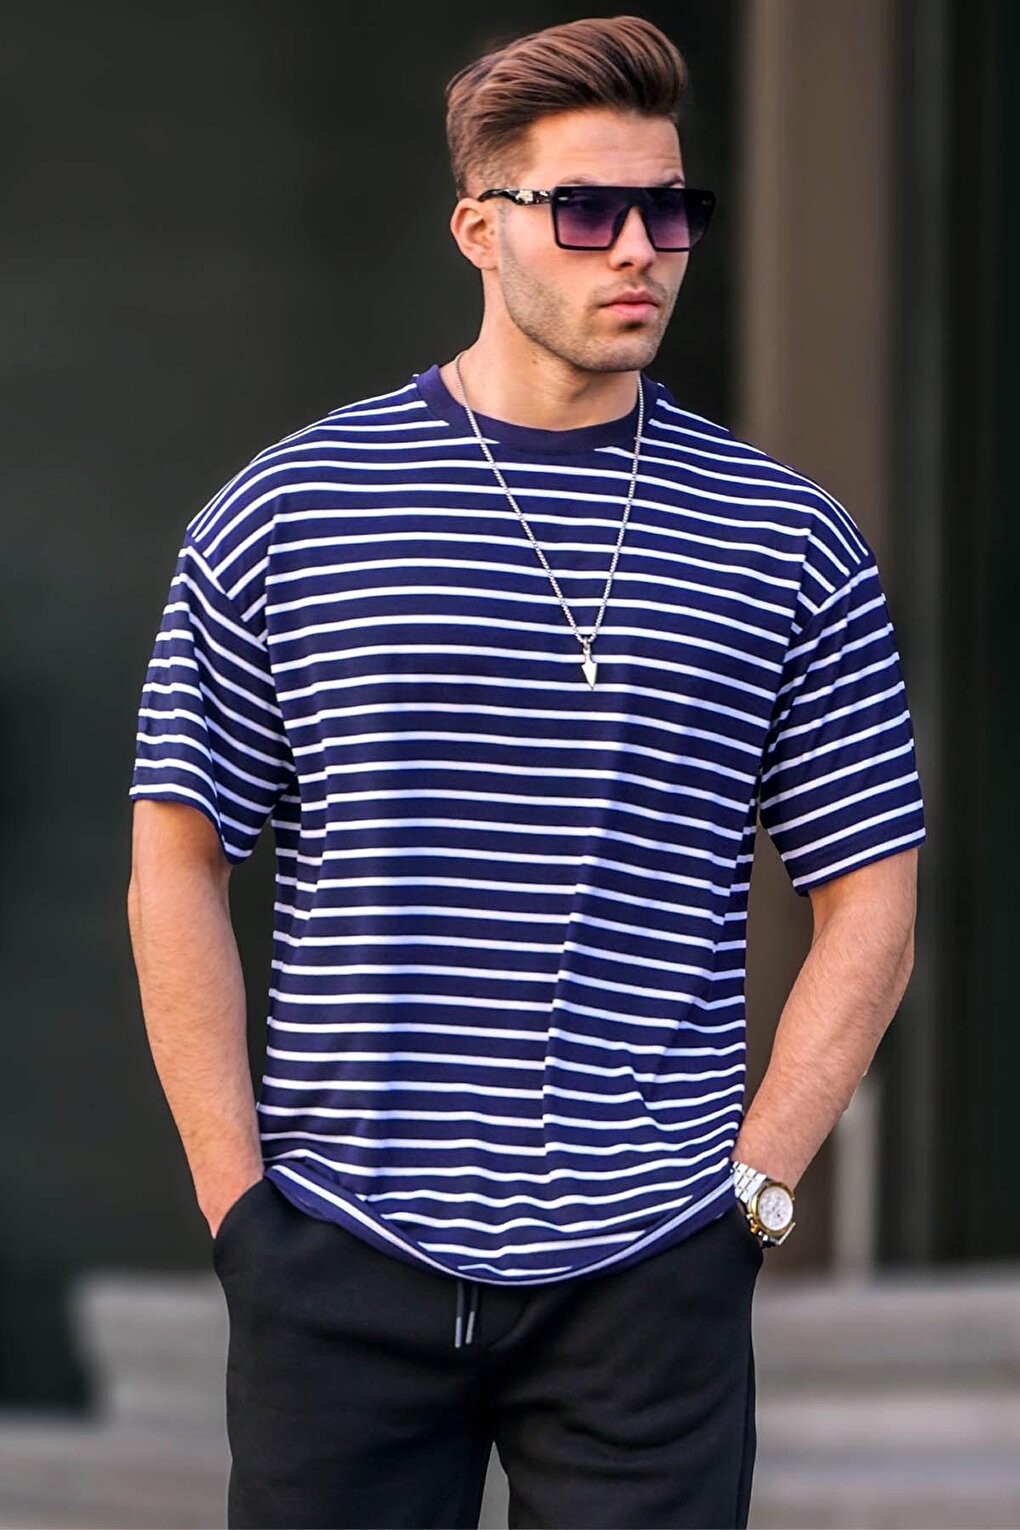 Мужская базовая футболка темно-синяя полоска 6071 MADMEXT цена и фото